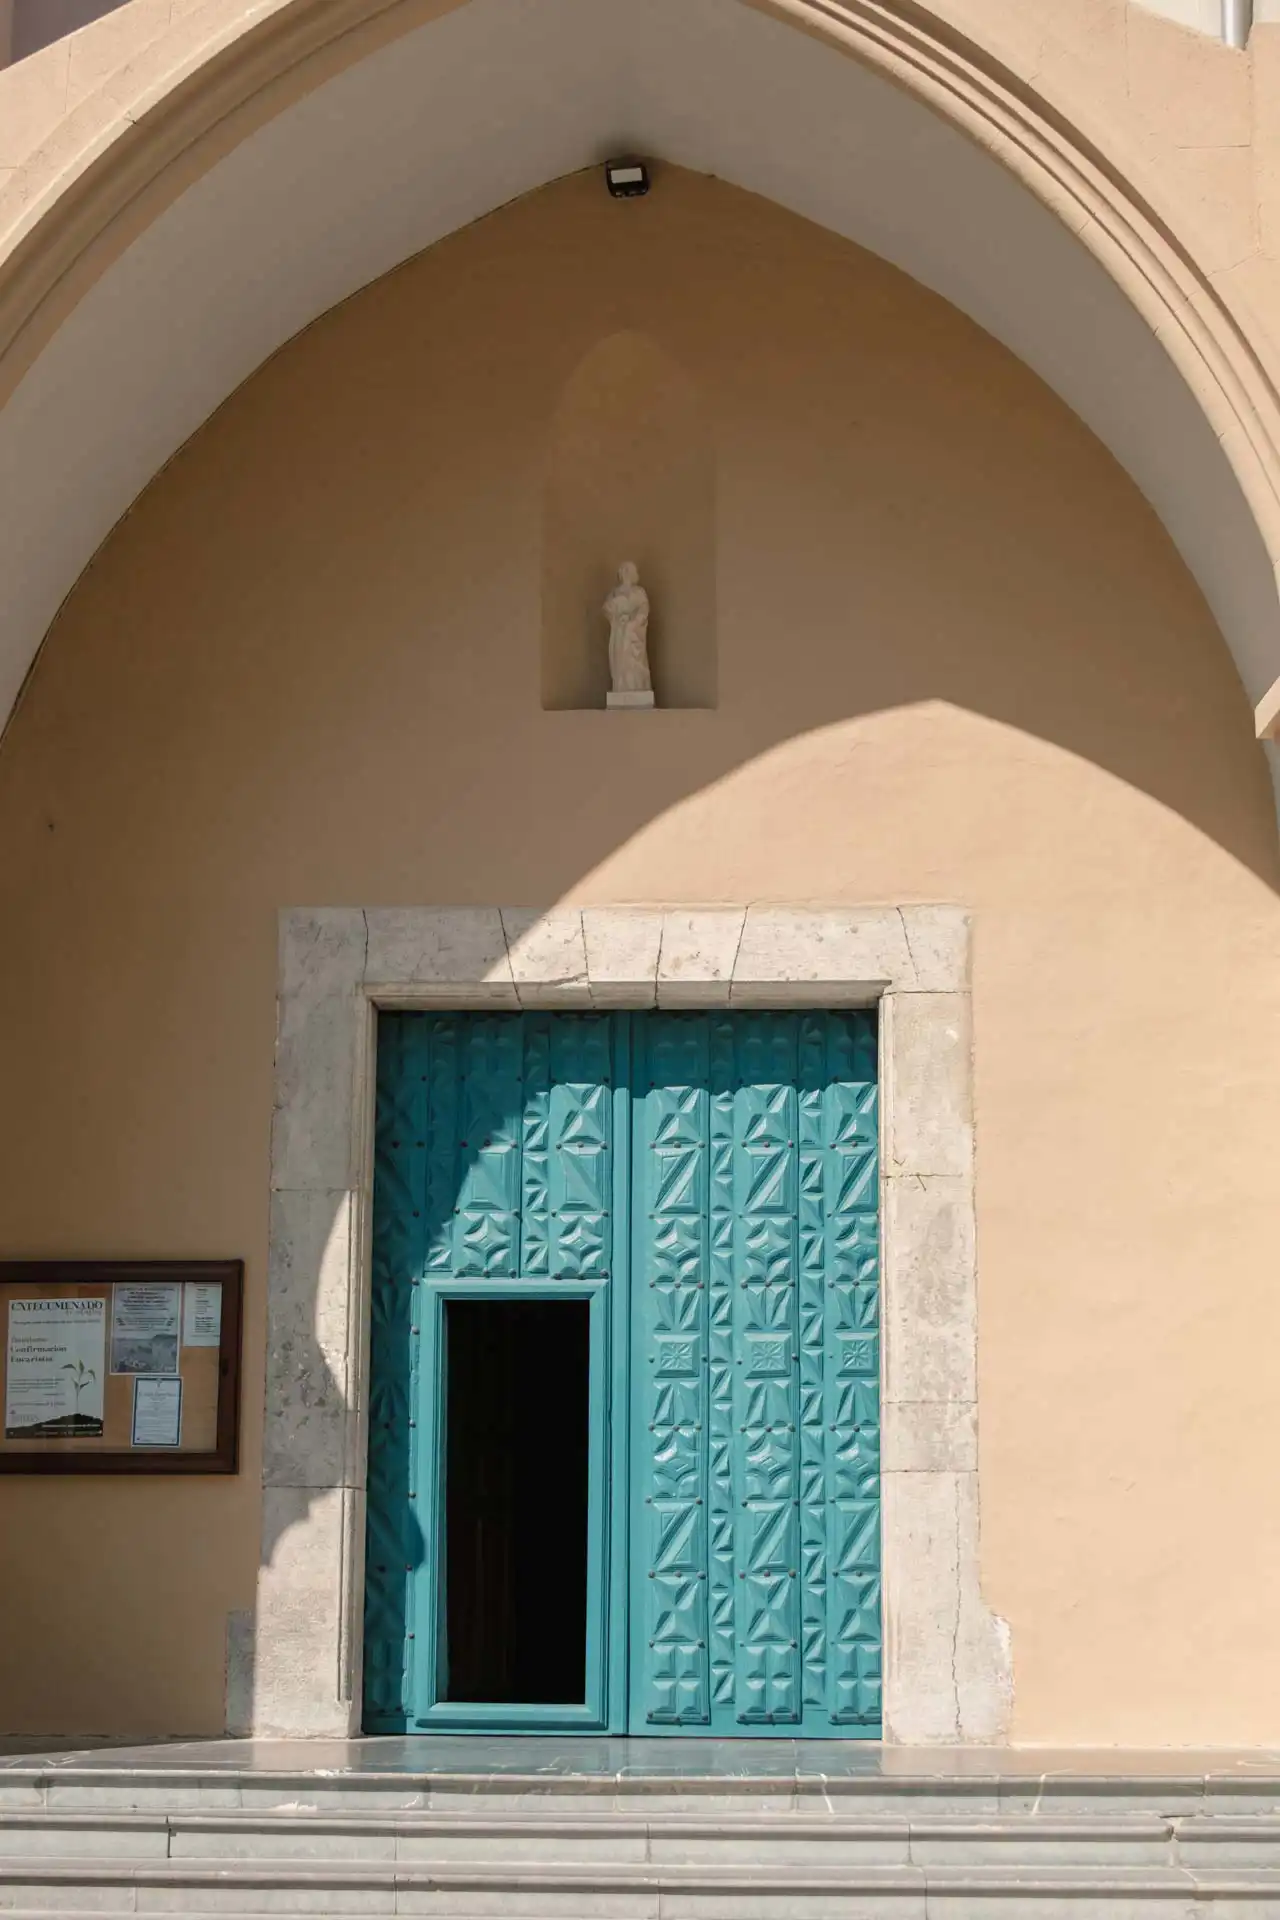 Porte de l'église San-Pedro de Cudillero dans les Asturies en Espagne